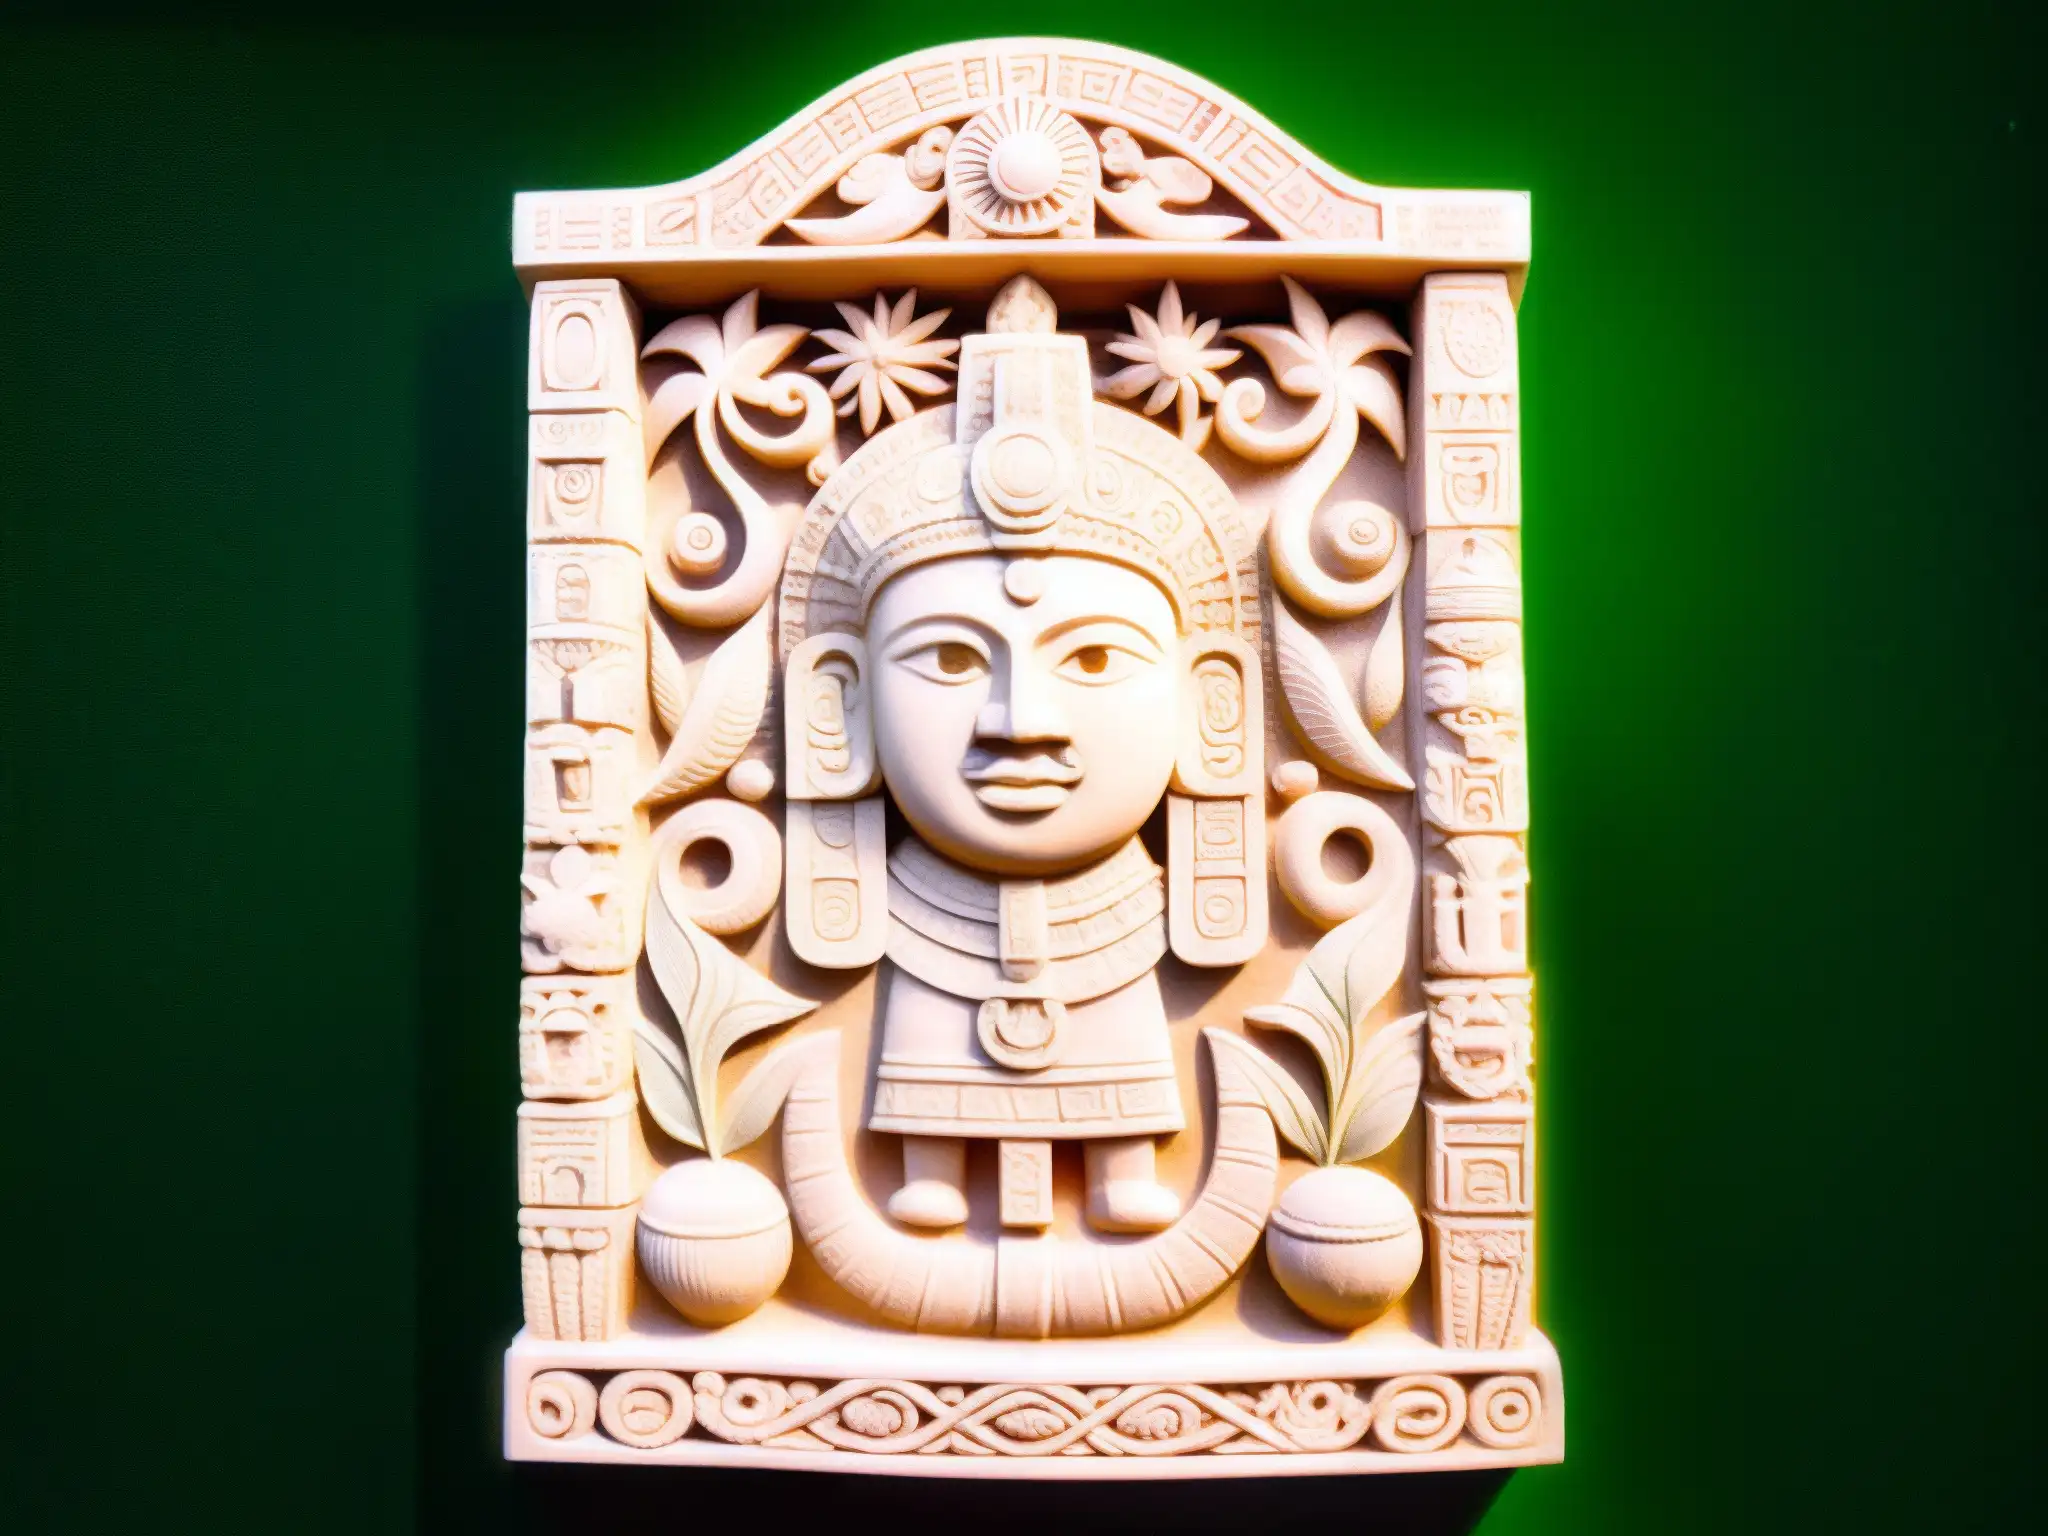 Relieve de piedra del misterio del Hombre Pez de Veracruz, tallado con detalle y rodeado de símbolos y criaturas marinas en la exuberante selva